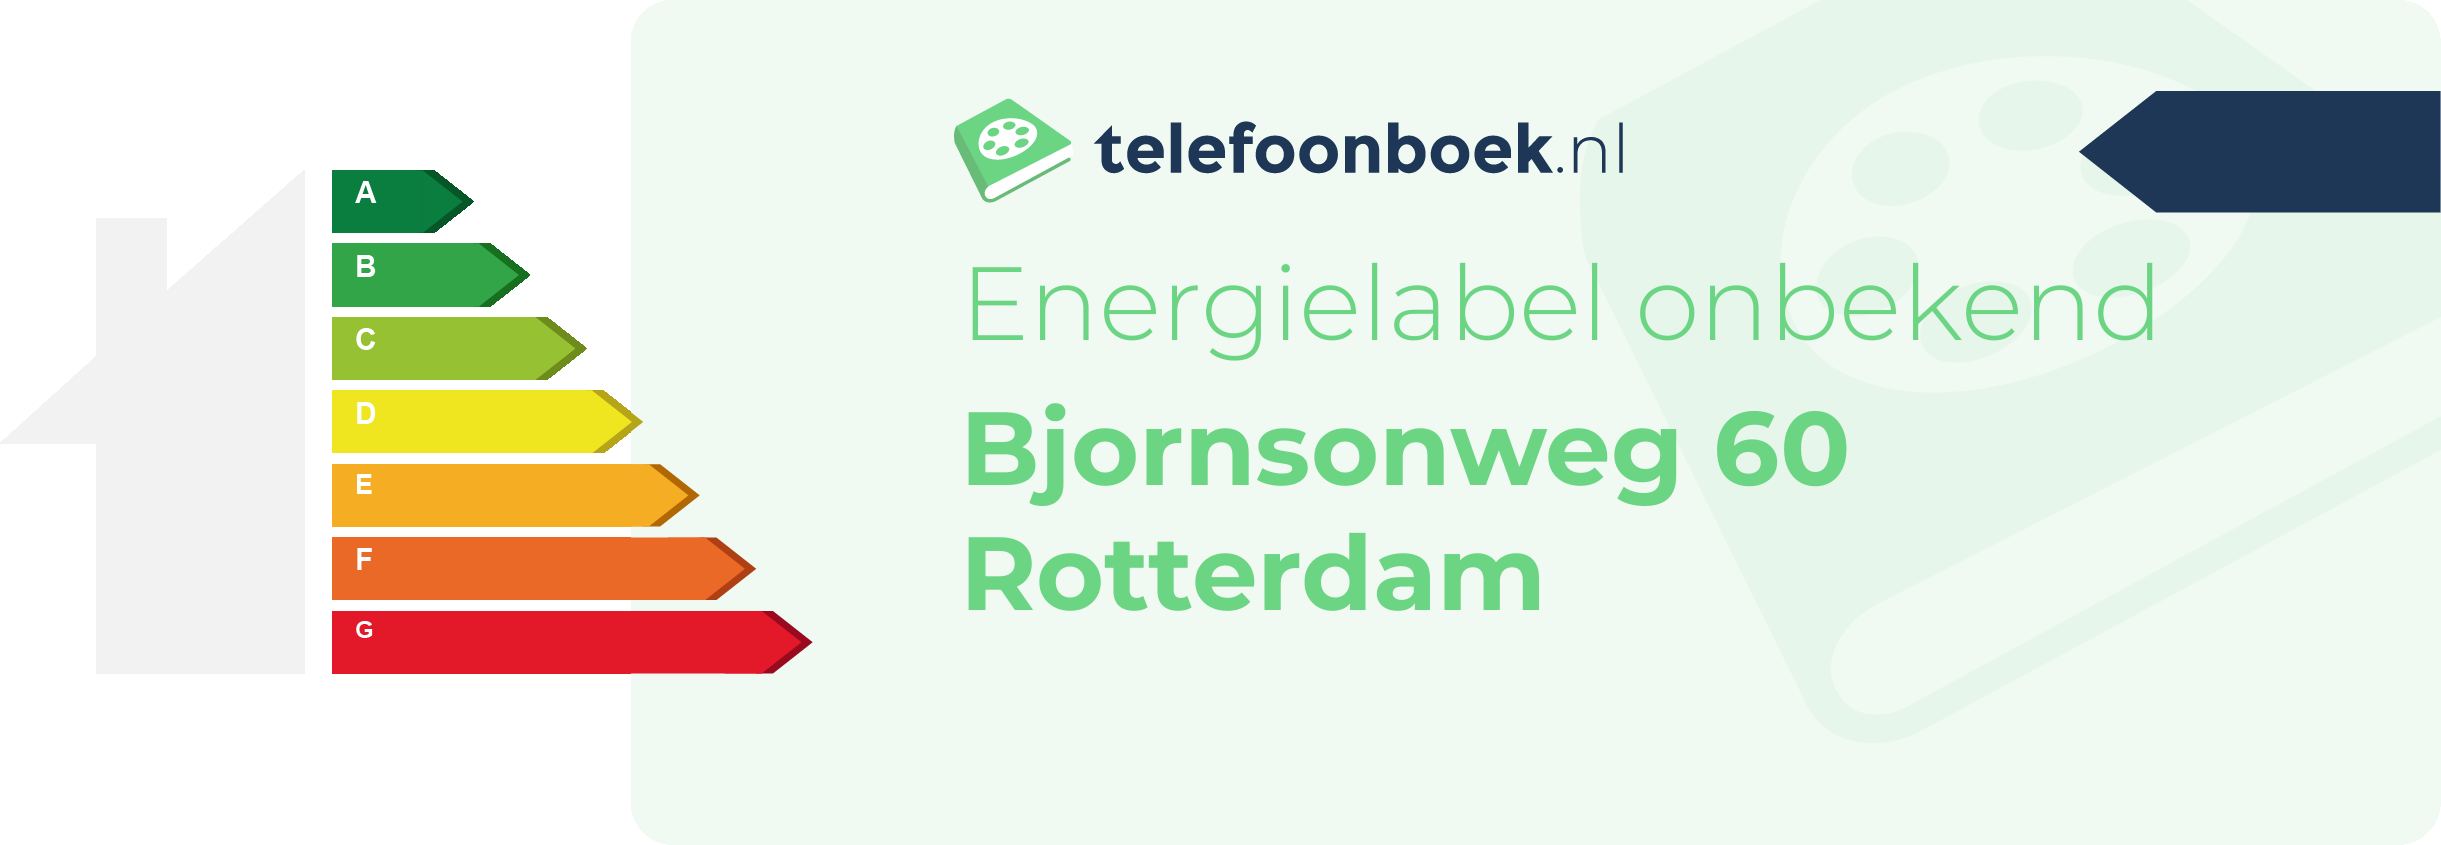 Energielabel Bjornsonweg 60 Rotterdam